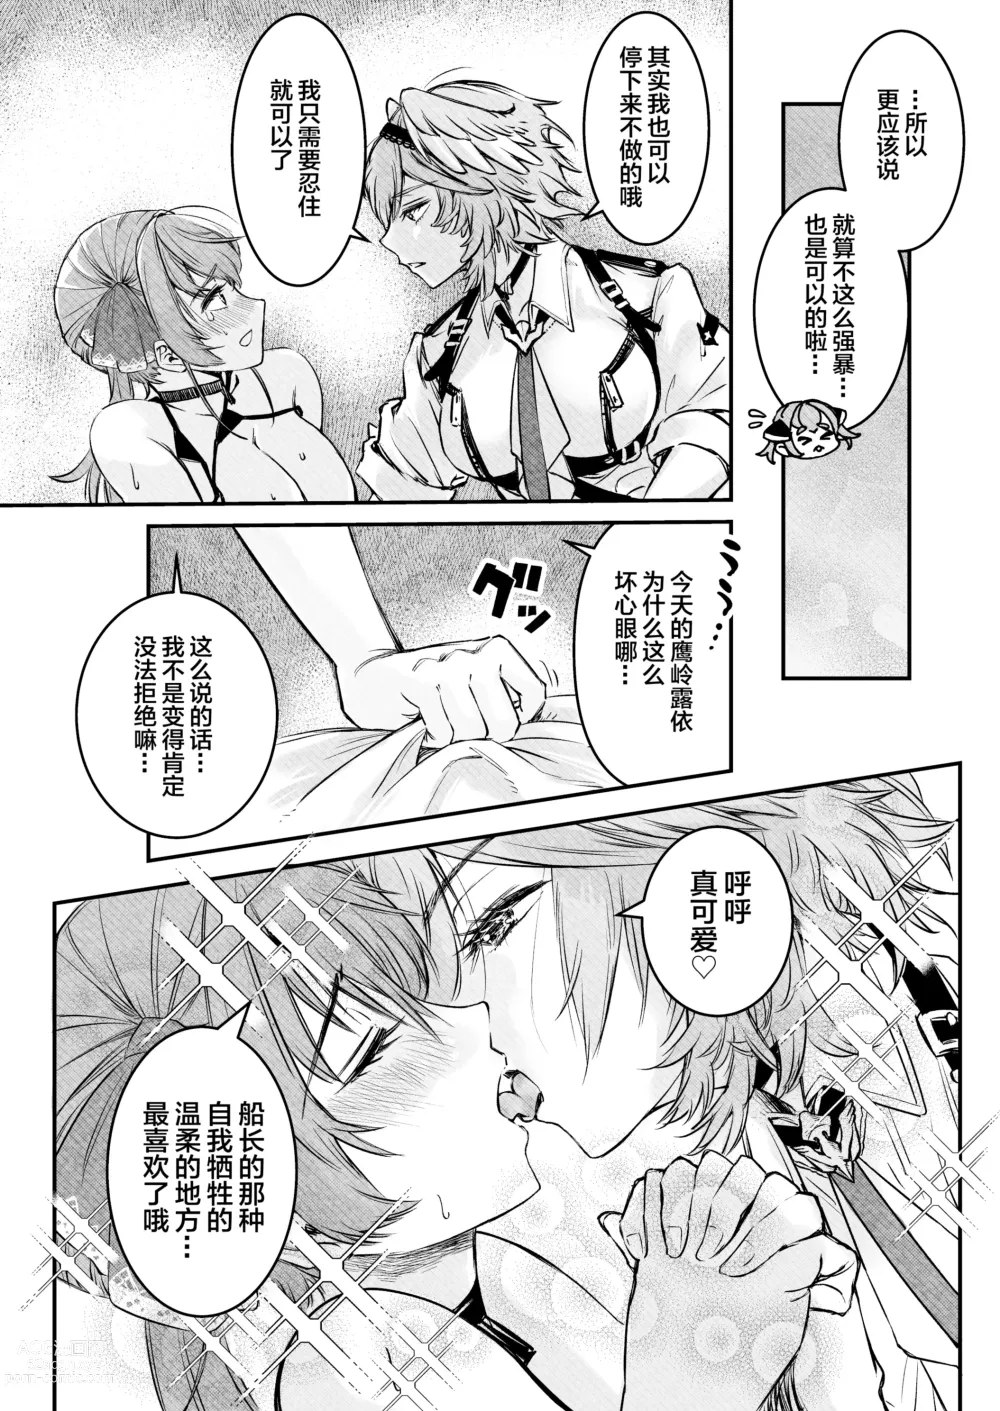 Page 10 of doujinshi Watashi ga Takarabako o Akete ii no ka ne?